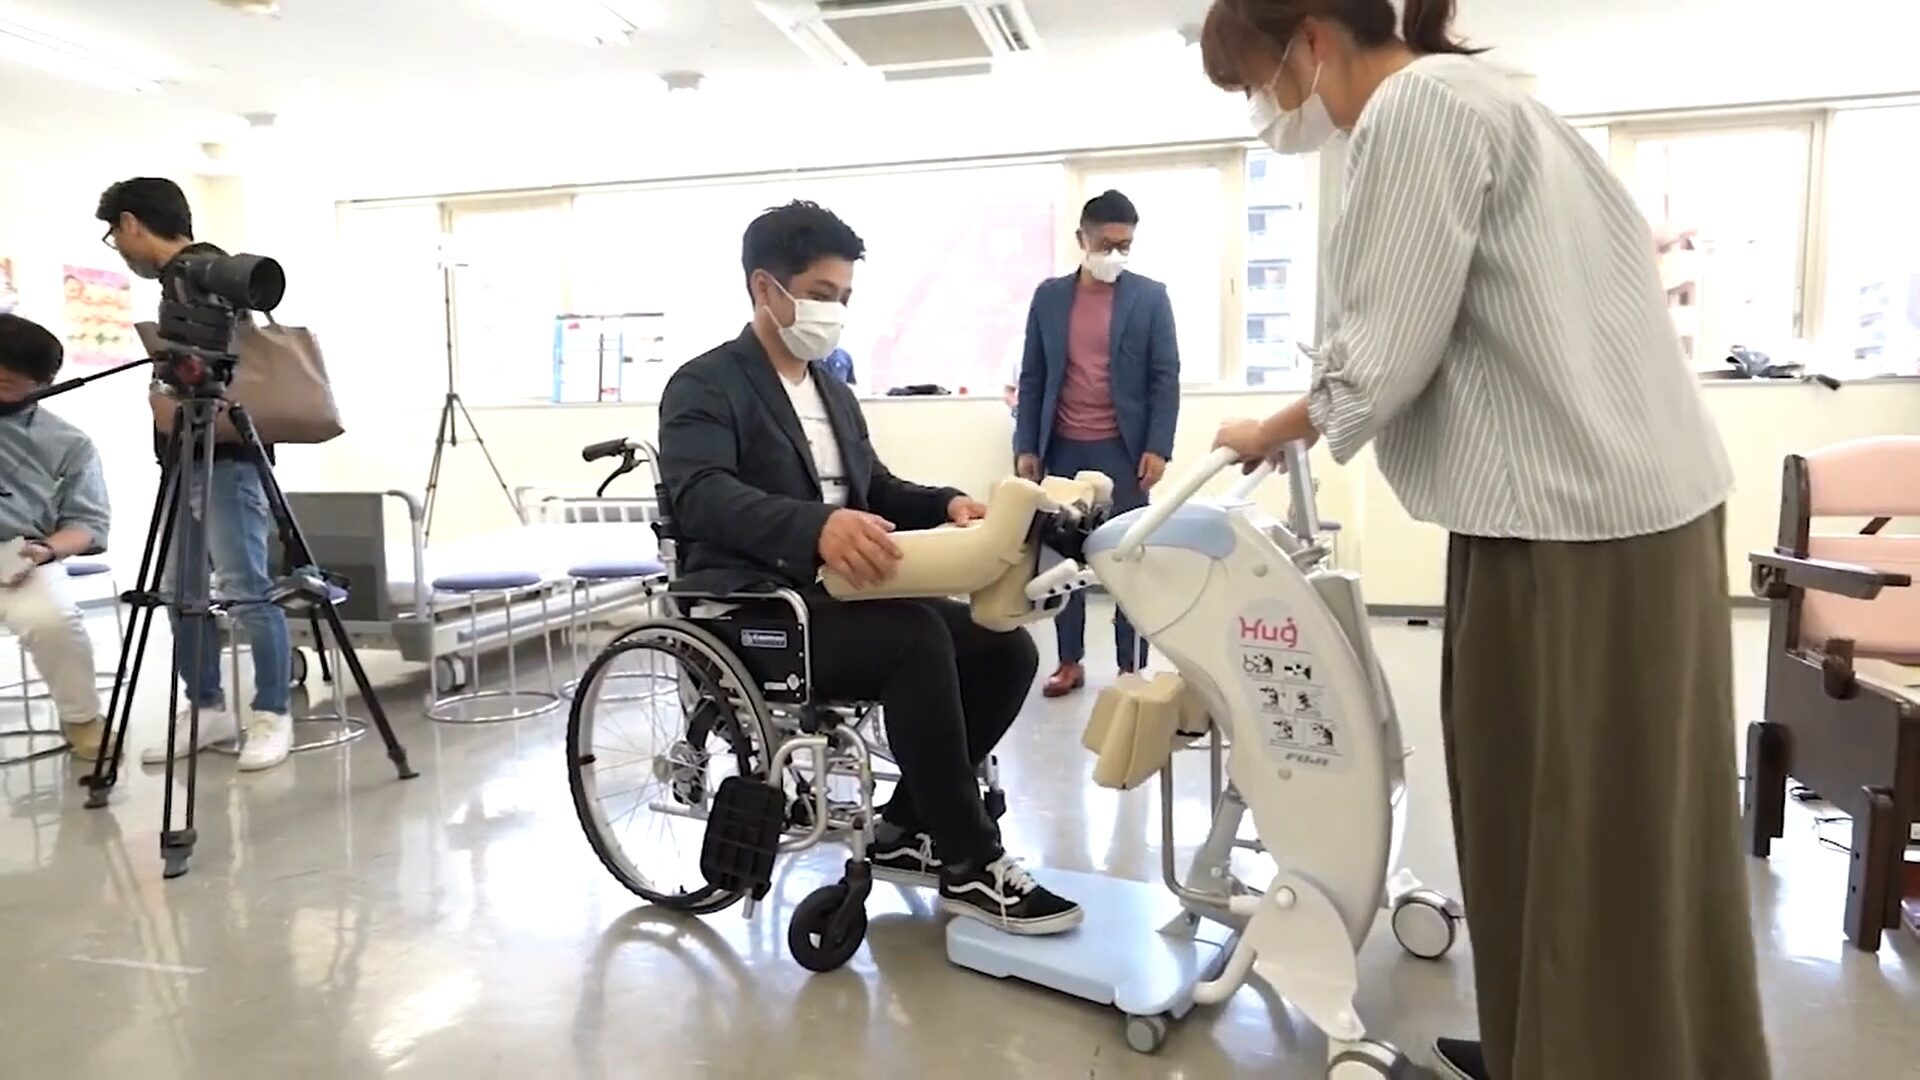 広島県介護福祉士養成施設協会主催の「ICT介護ロボット導入支援研修」が本校で行われました。メイン画像